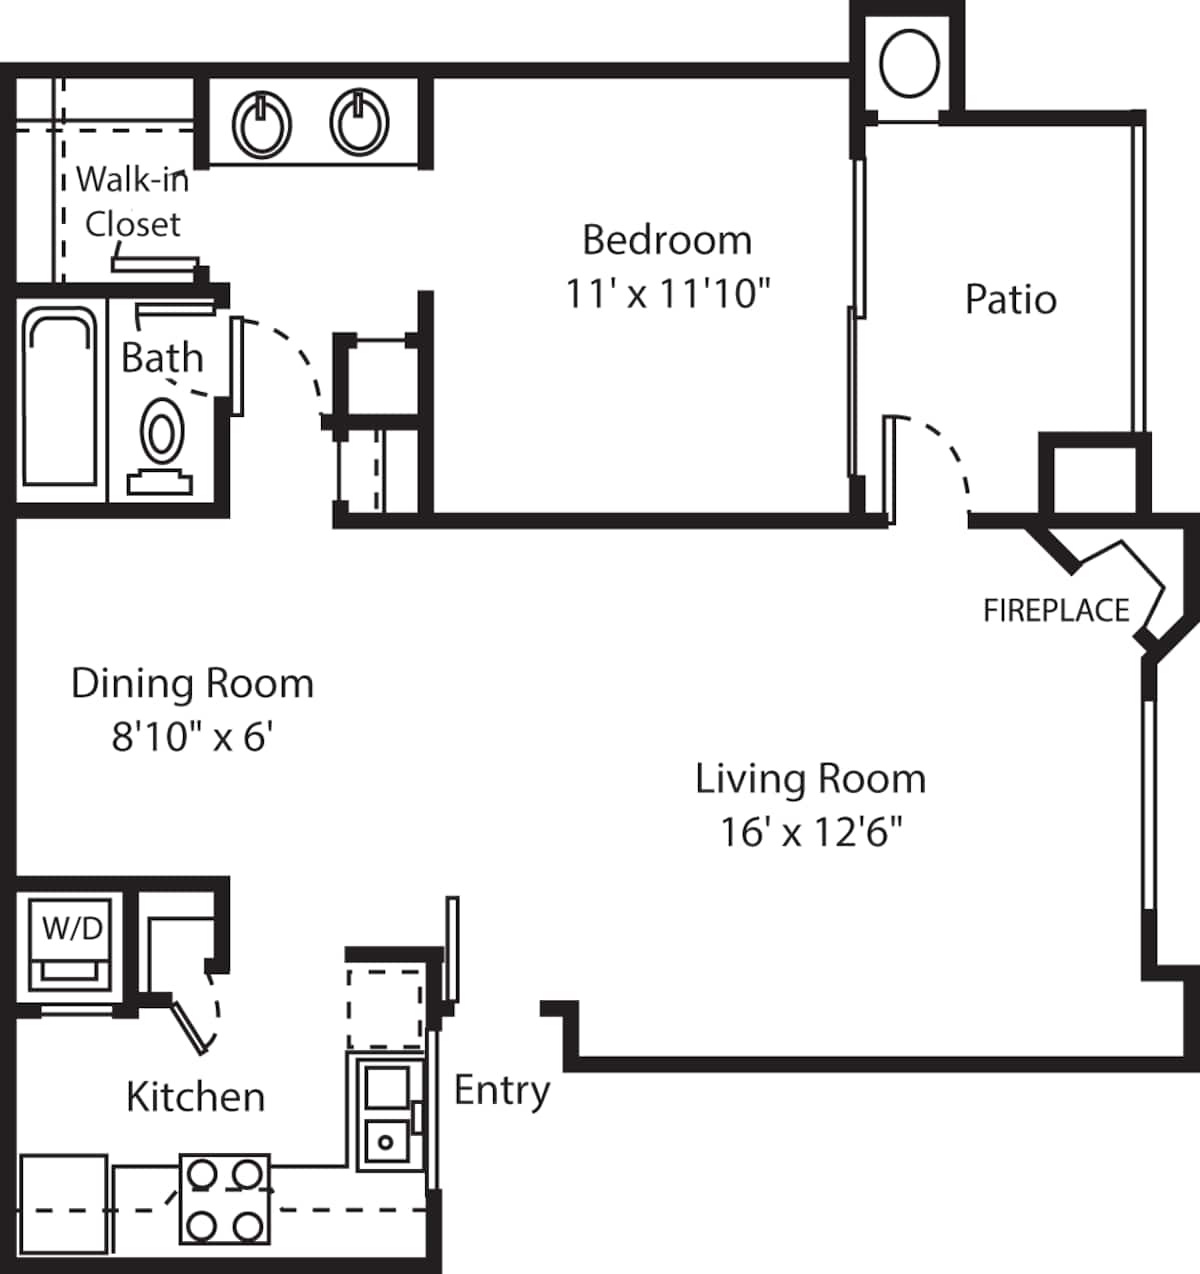 Floorplan diagram for Pienza, showing 1 bedroom